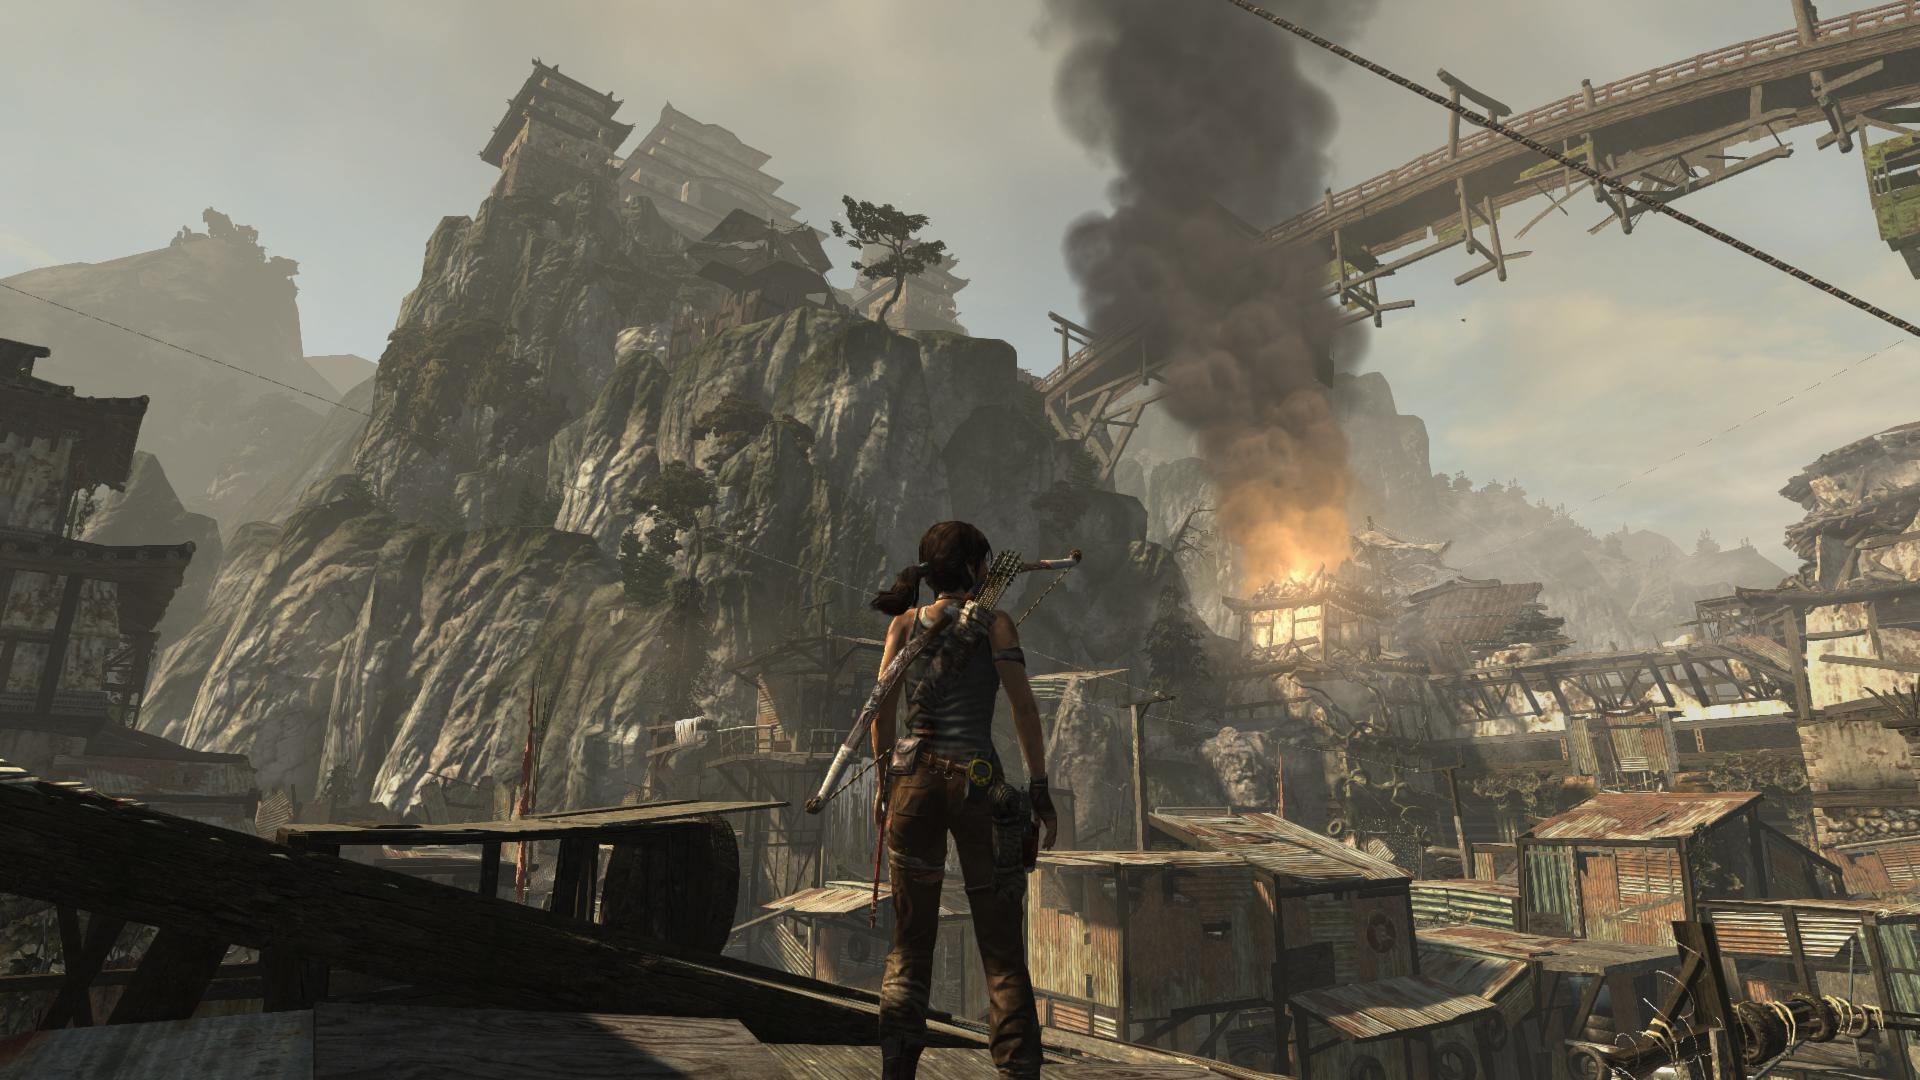 Топ игр 7 лет. Томб Райдер 2013 геймплей. Tomb Raider 2013 геймплей. Tomb Raider 2013 Gameplay. Tomb Raider игра 2013 геймплей.